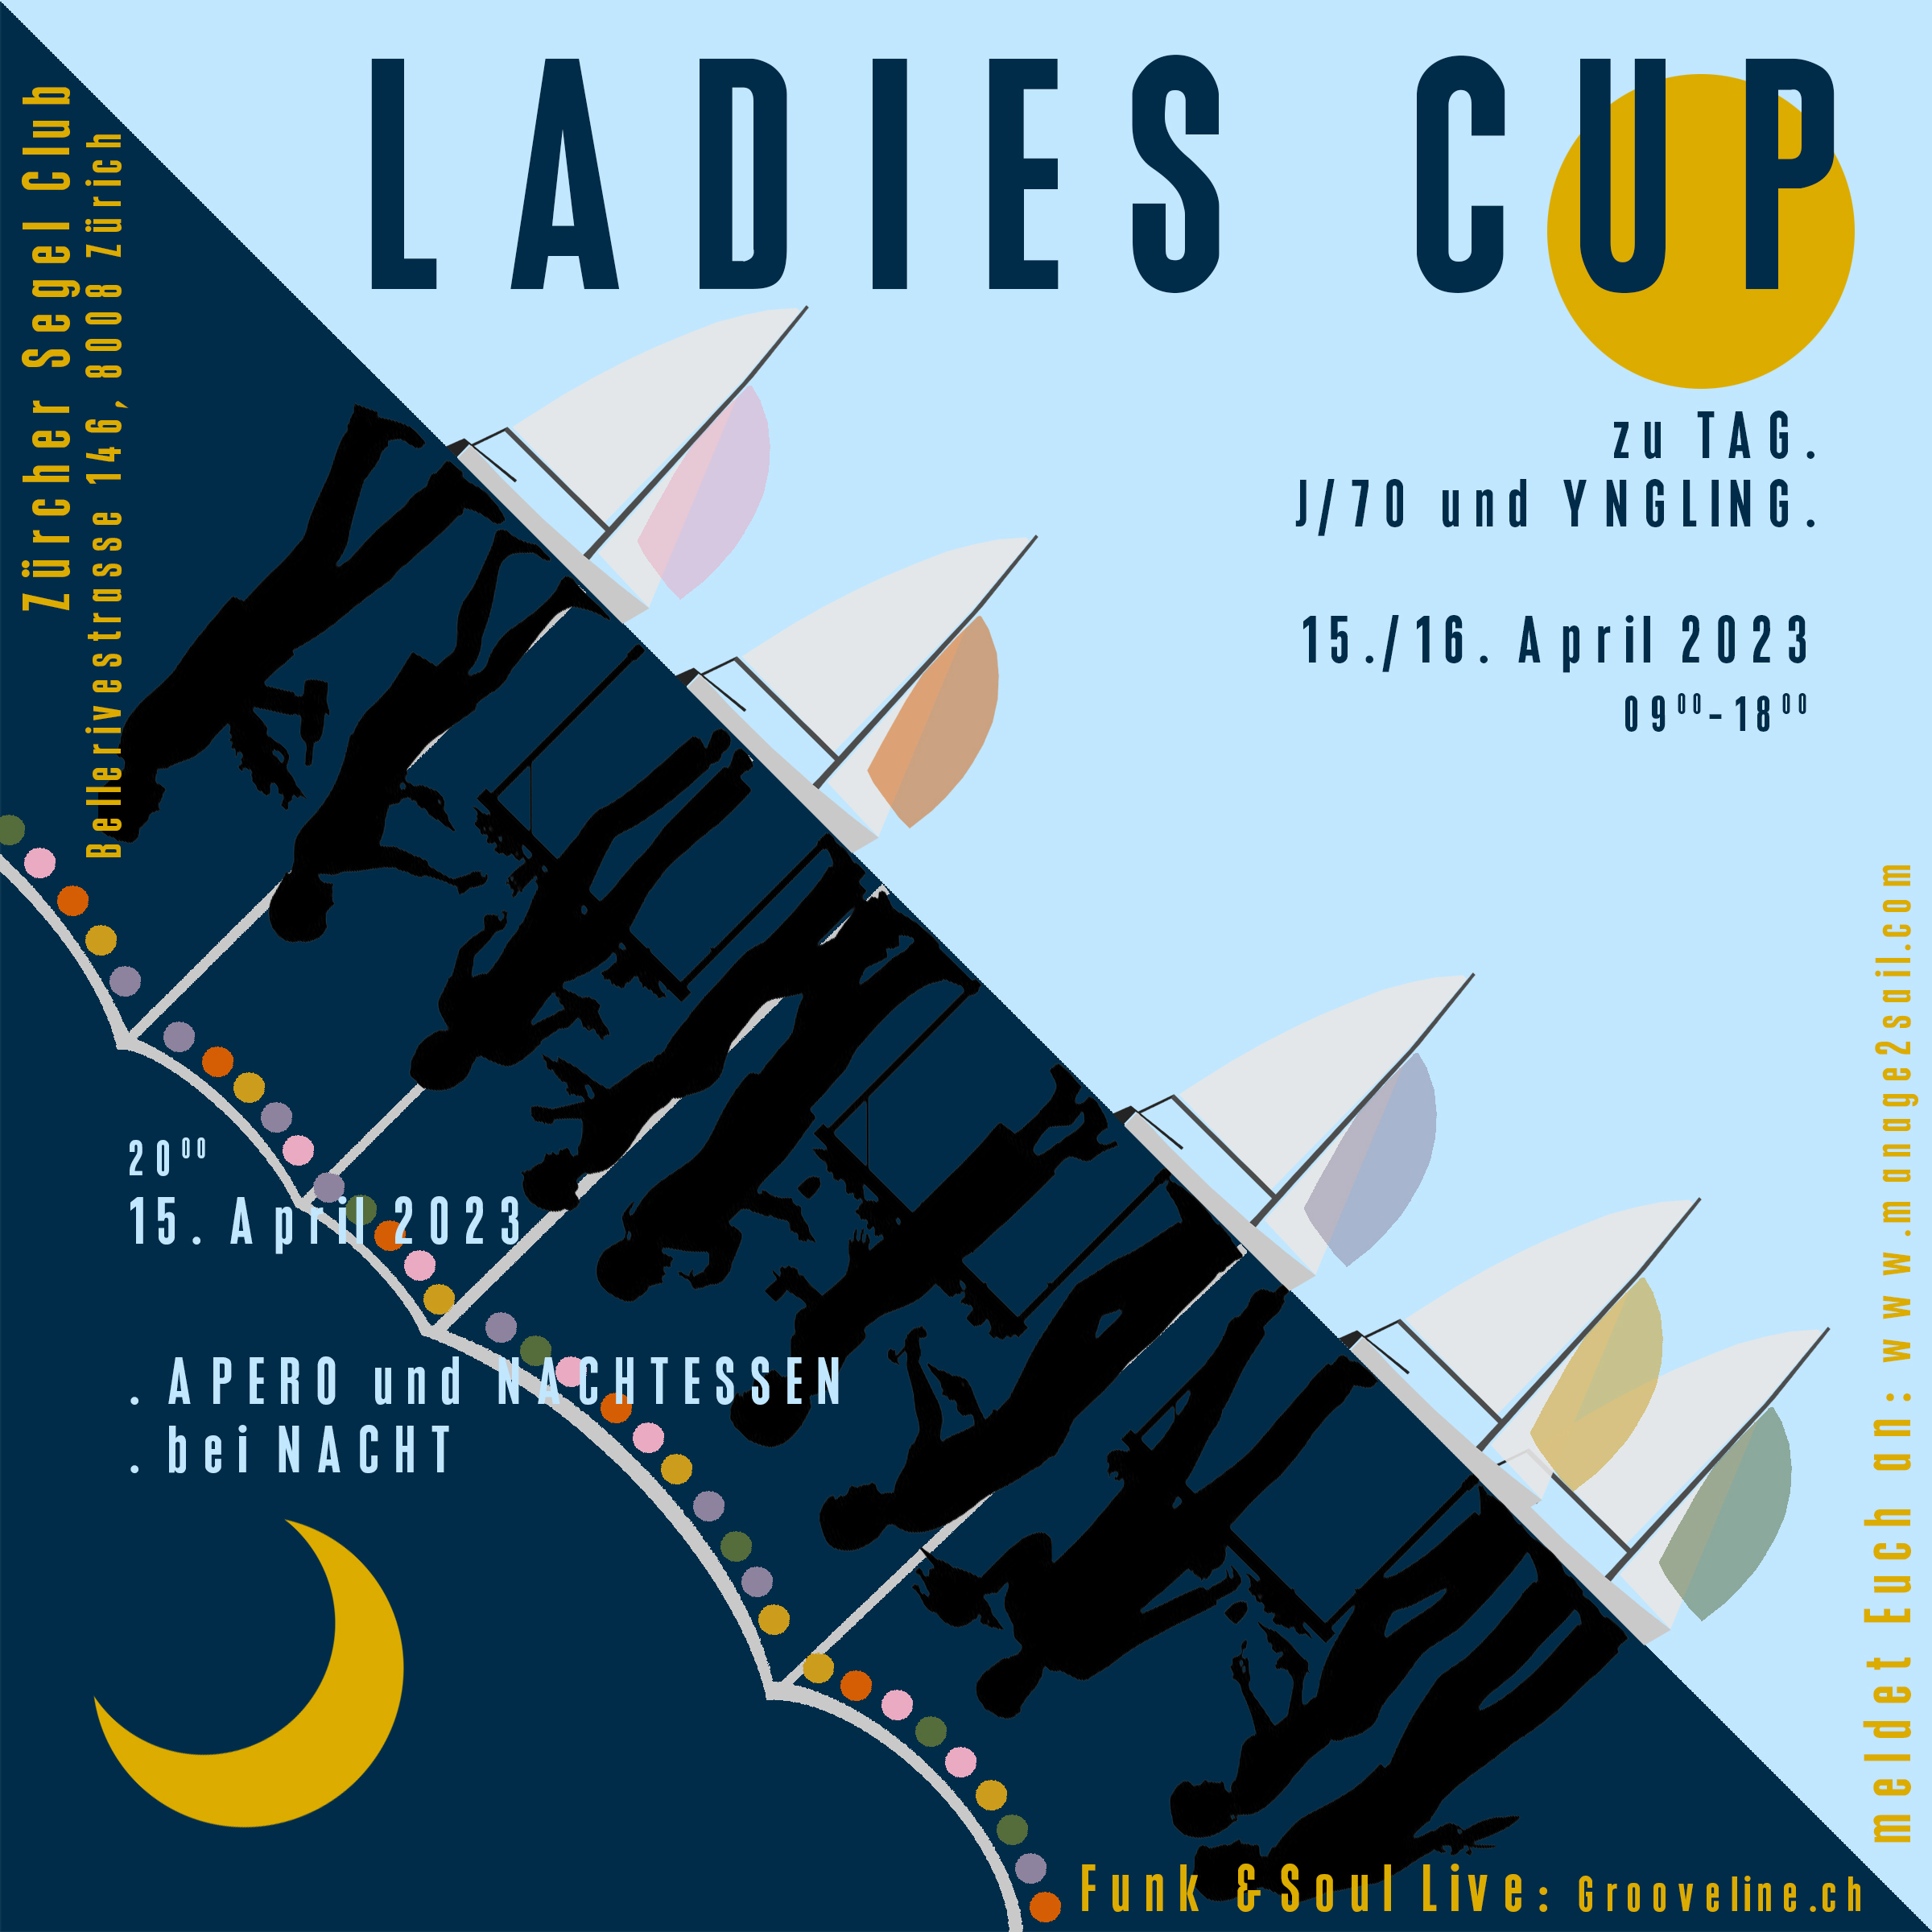 Ladies' Cup 2023